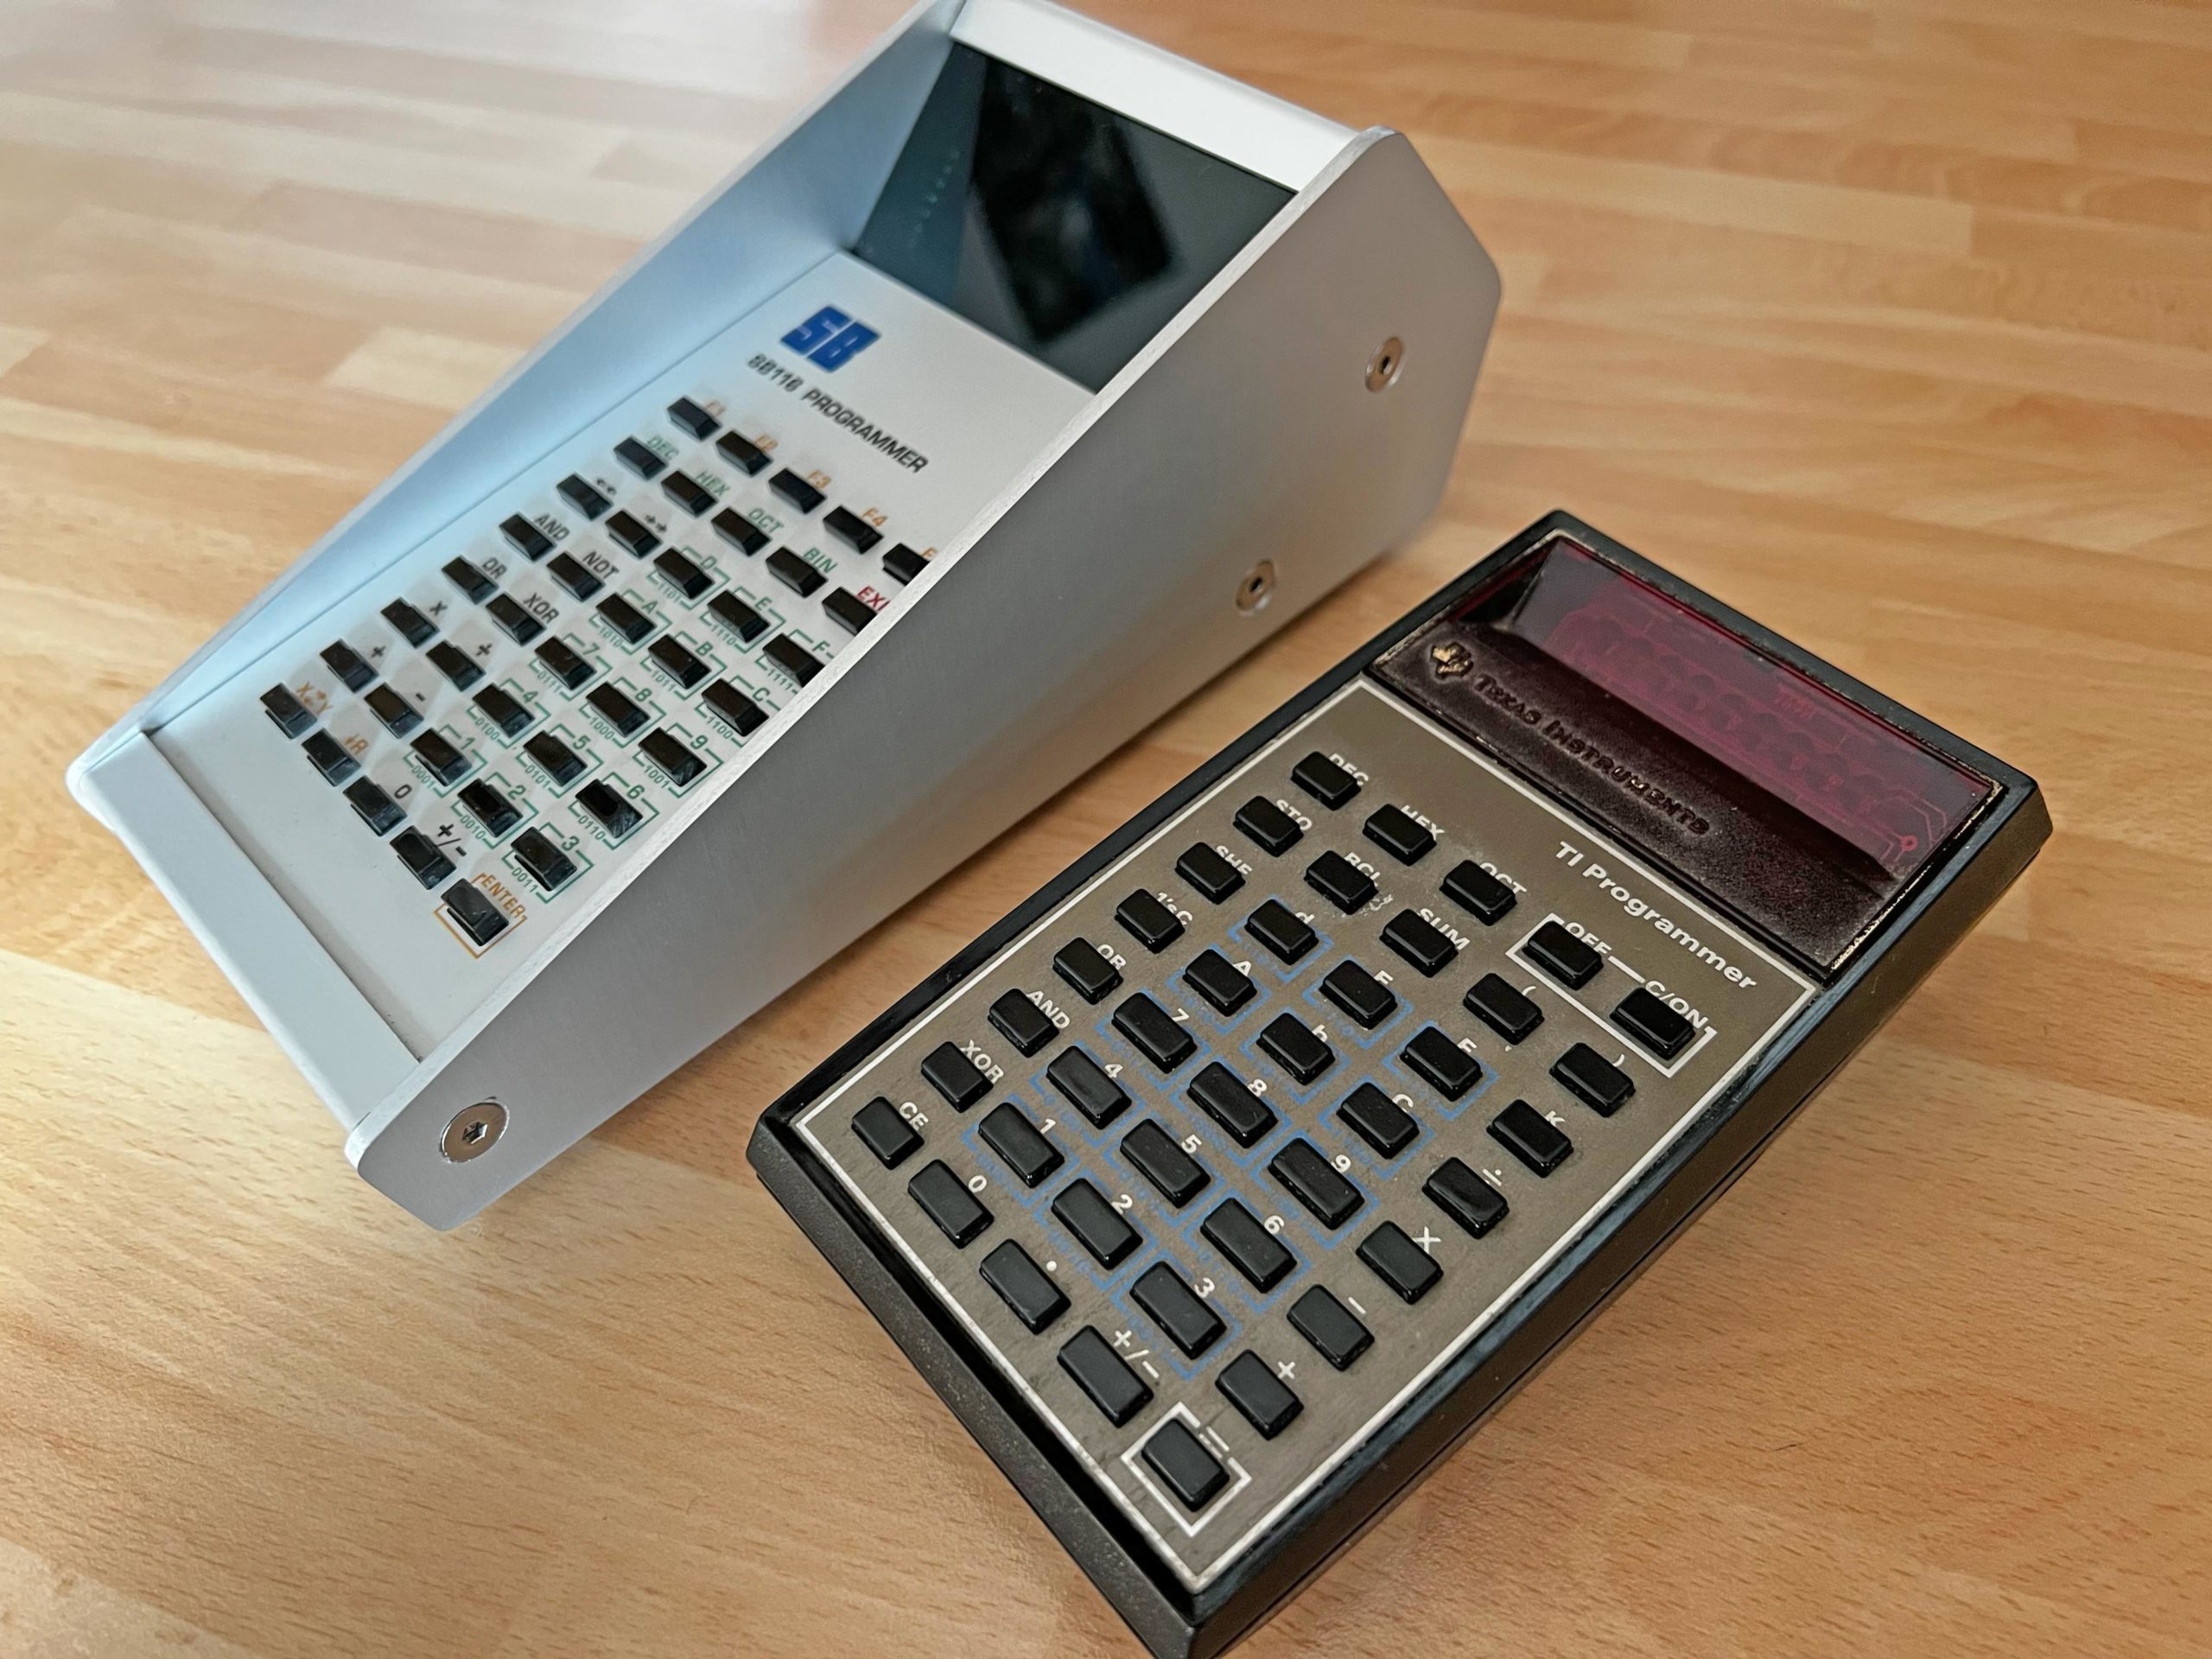 SB116 Саймона Боака — це калькулятор своїми руками, створений за мотивами програміста TI